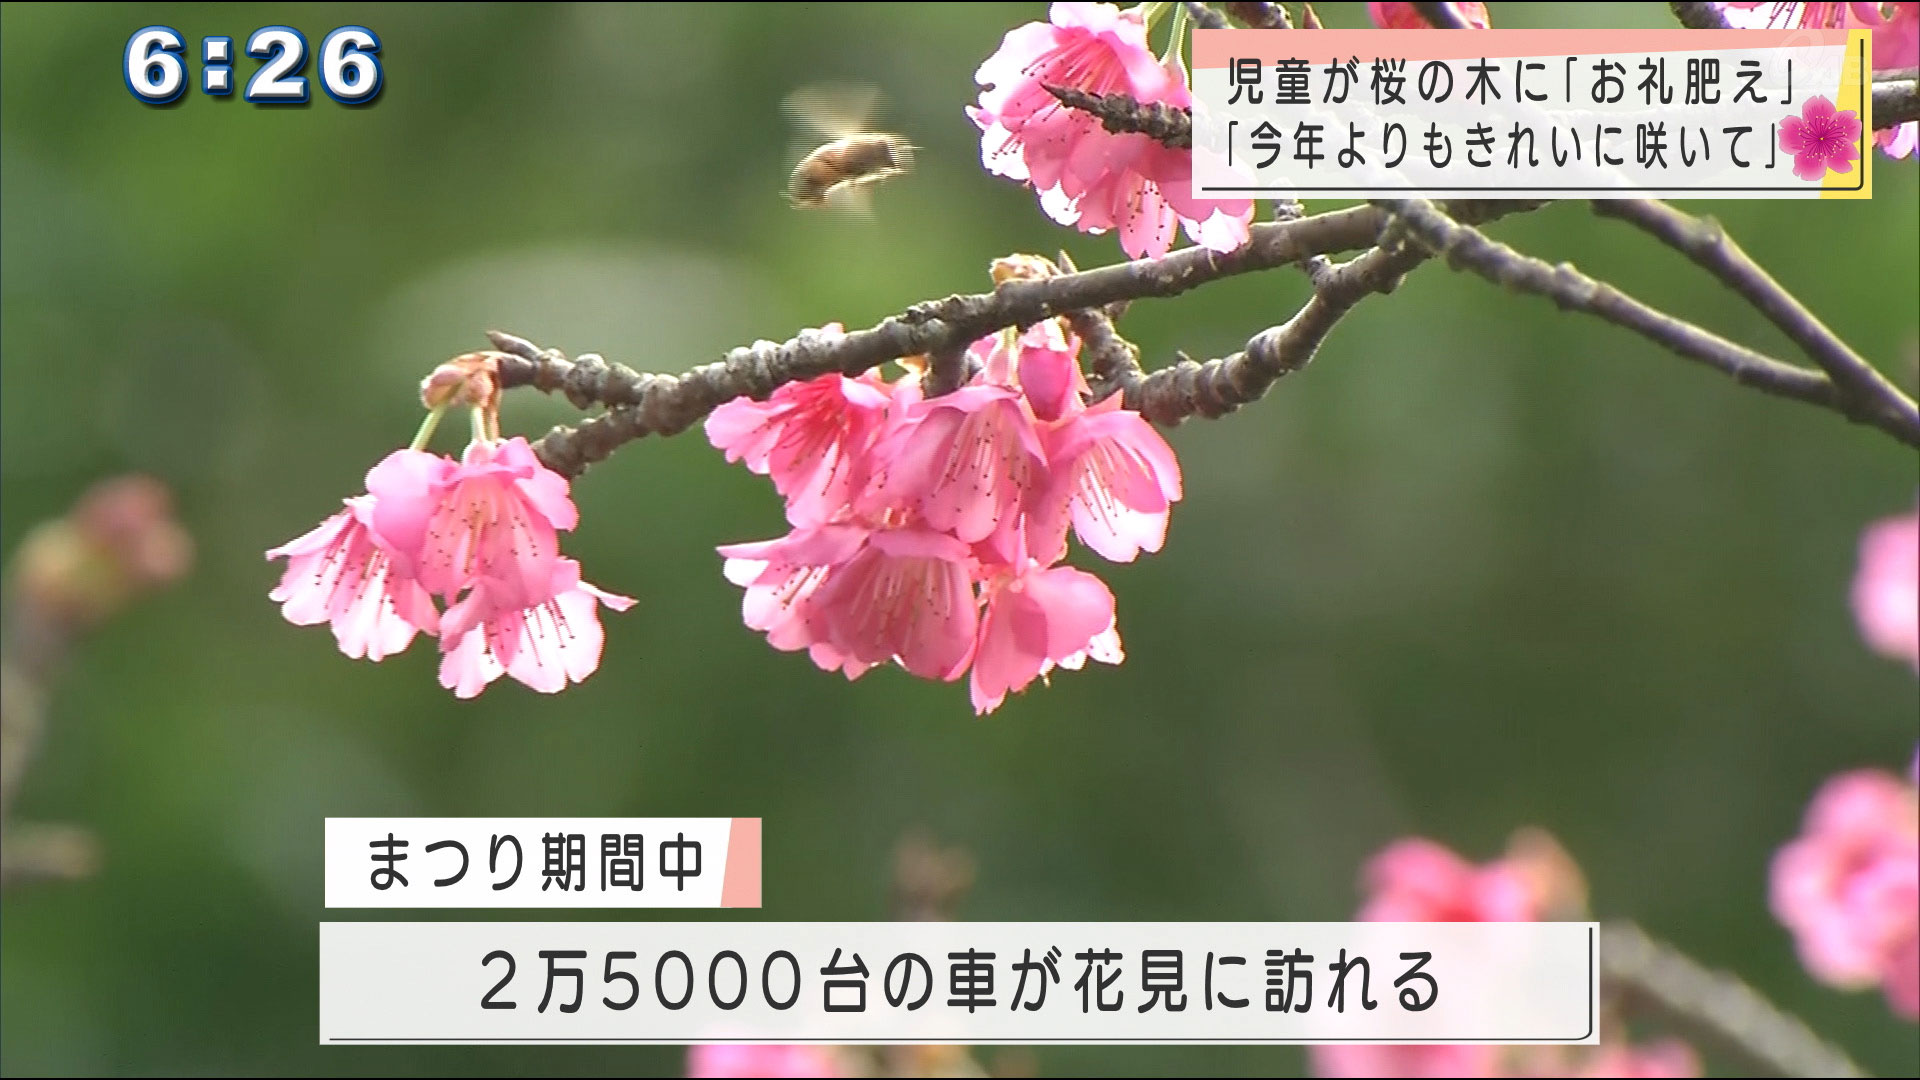 桜の木にお礼の肥料